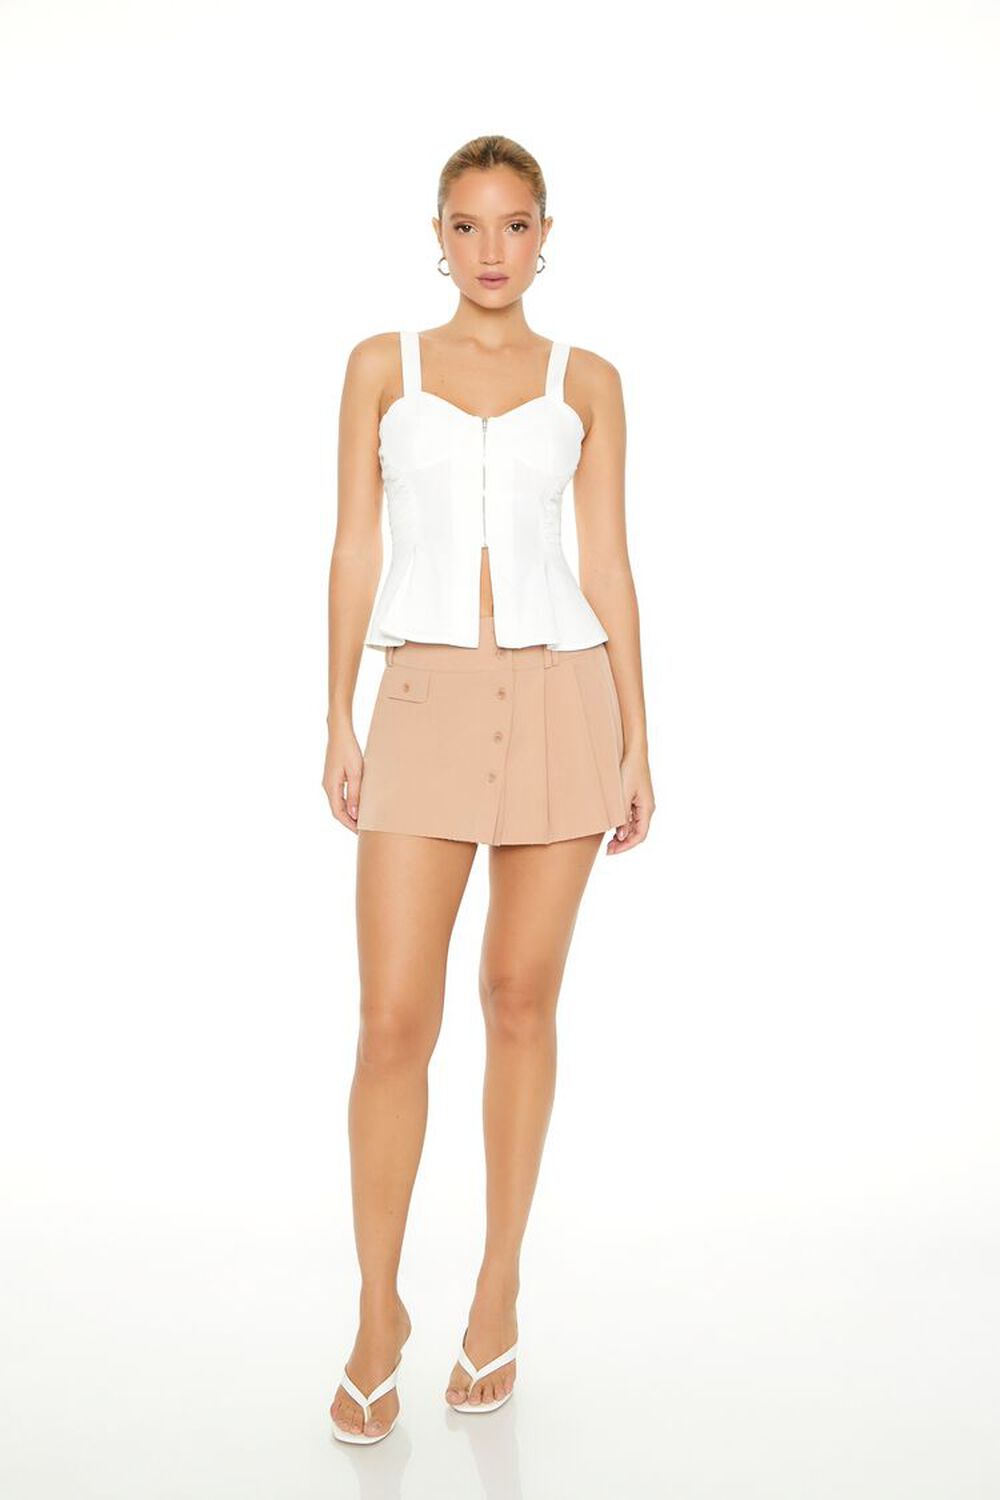 CAMEL Pleated Mini Skirt, image 1